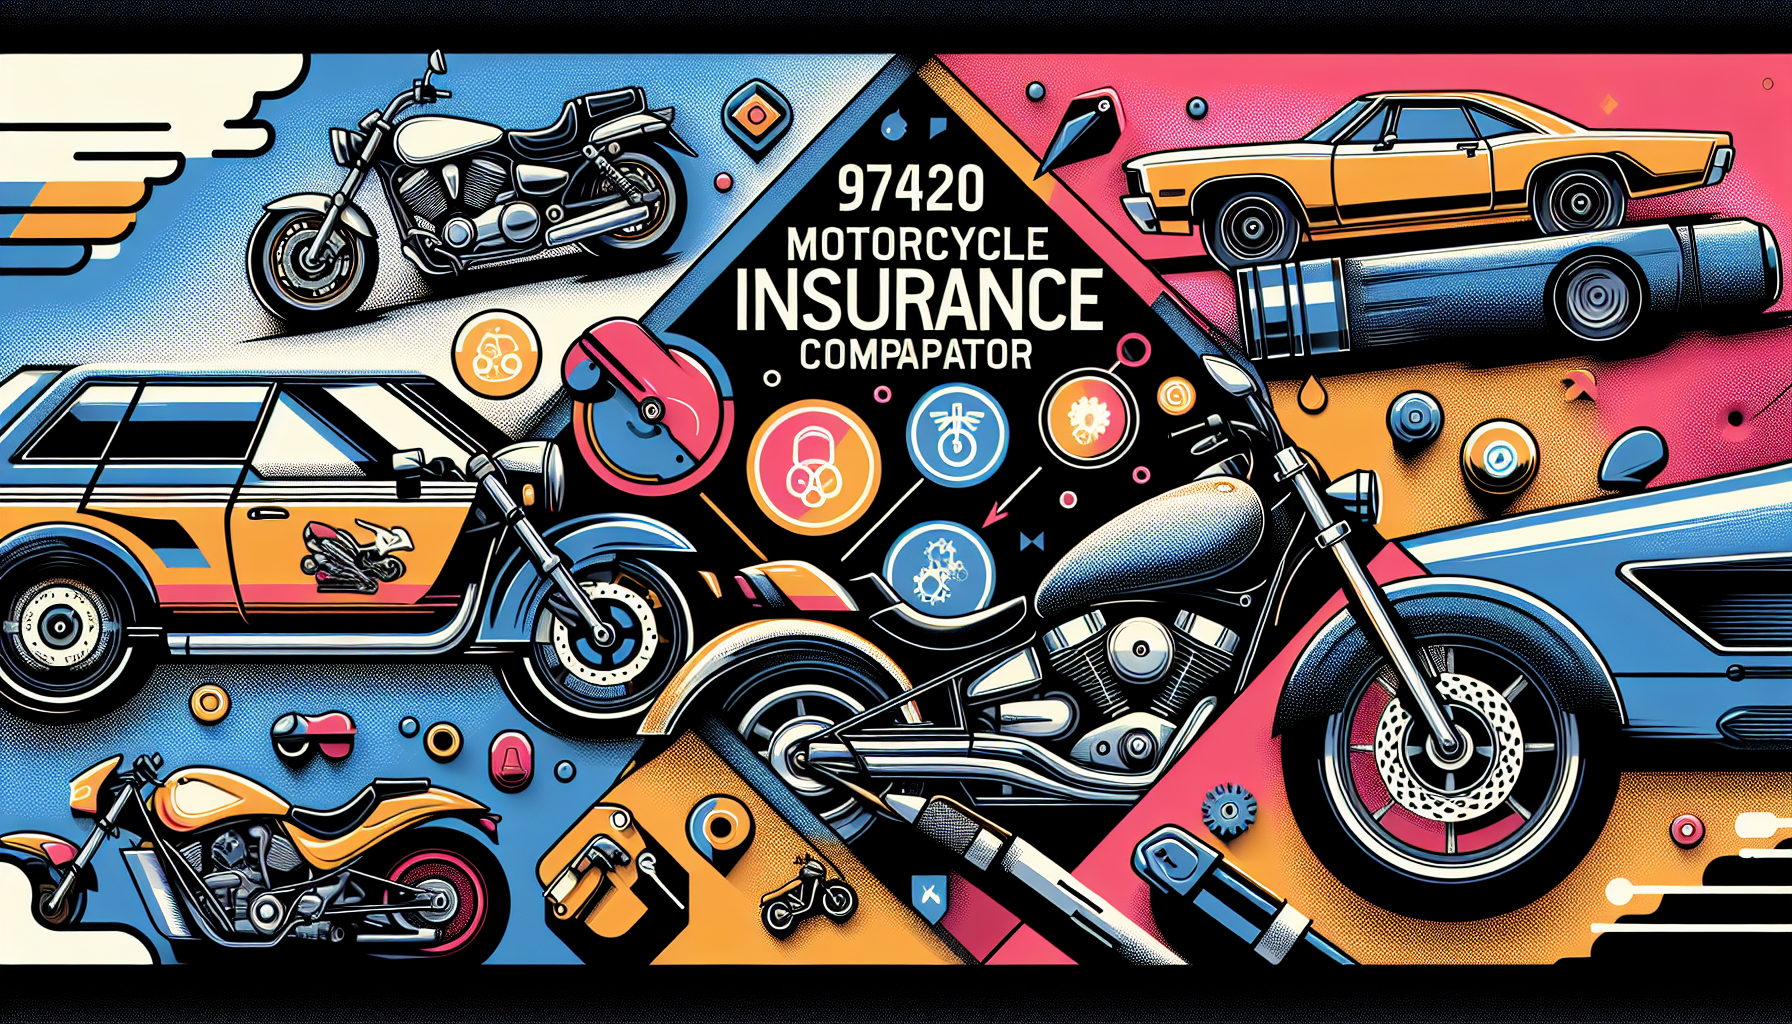 découvrez les différents types d'assurance moto 97420 et trouvez le meilleur comparateur d'assurance moto 97420 pour trouver la couverture qui vous convient.